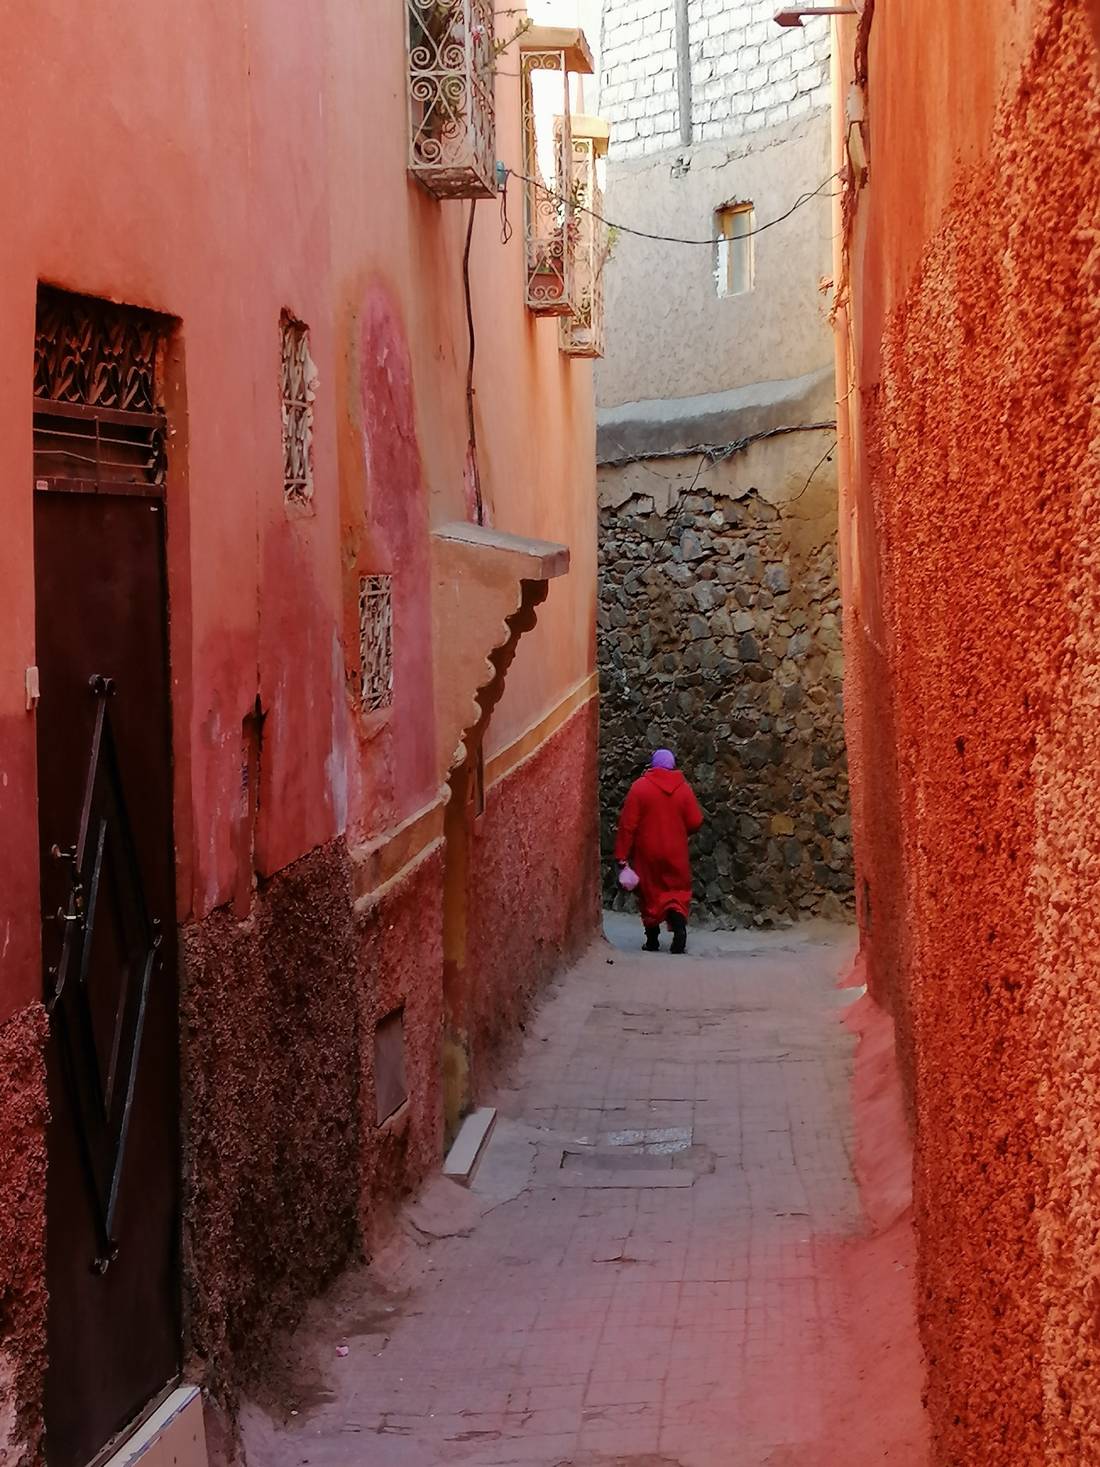 Getting lost in Marrakech. 